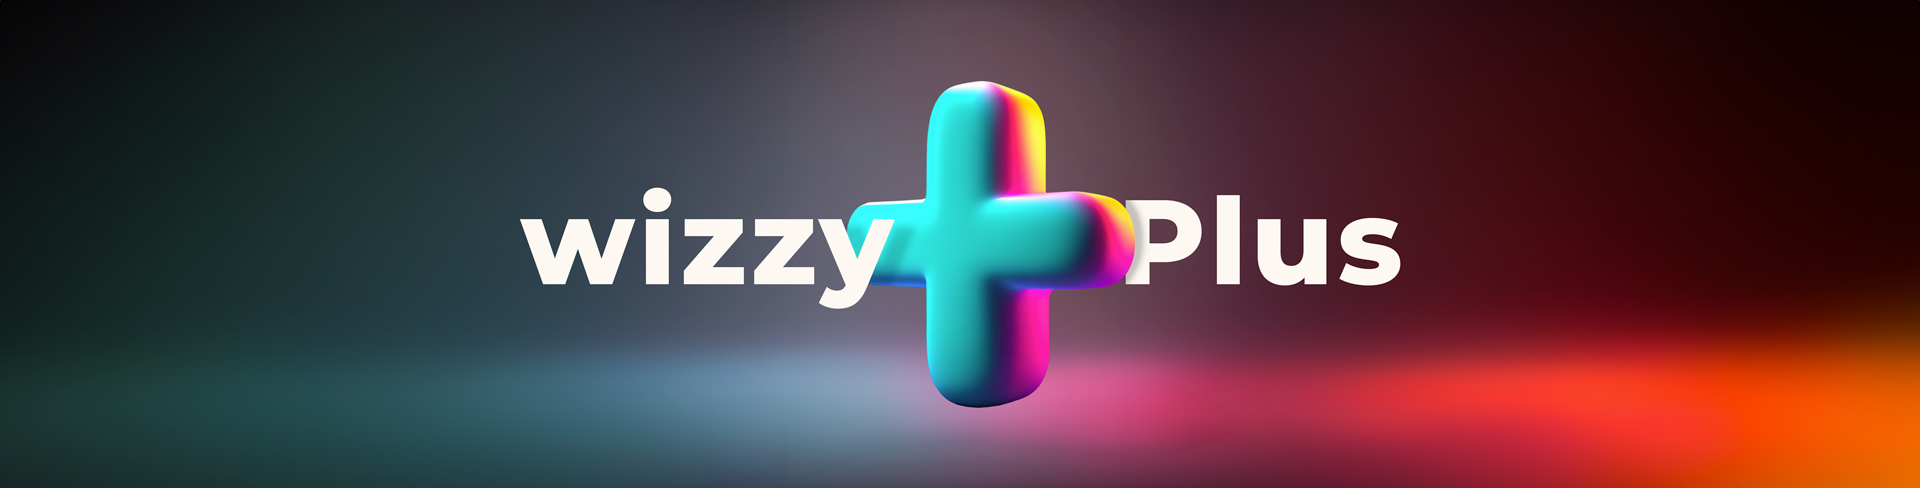 wizzyplus logo